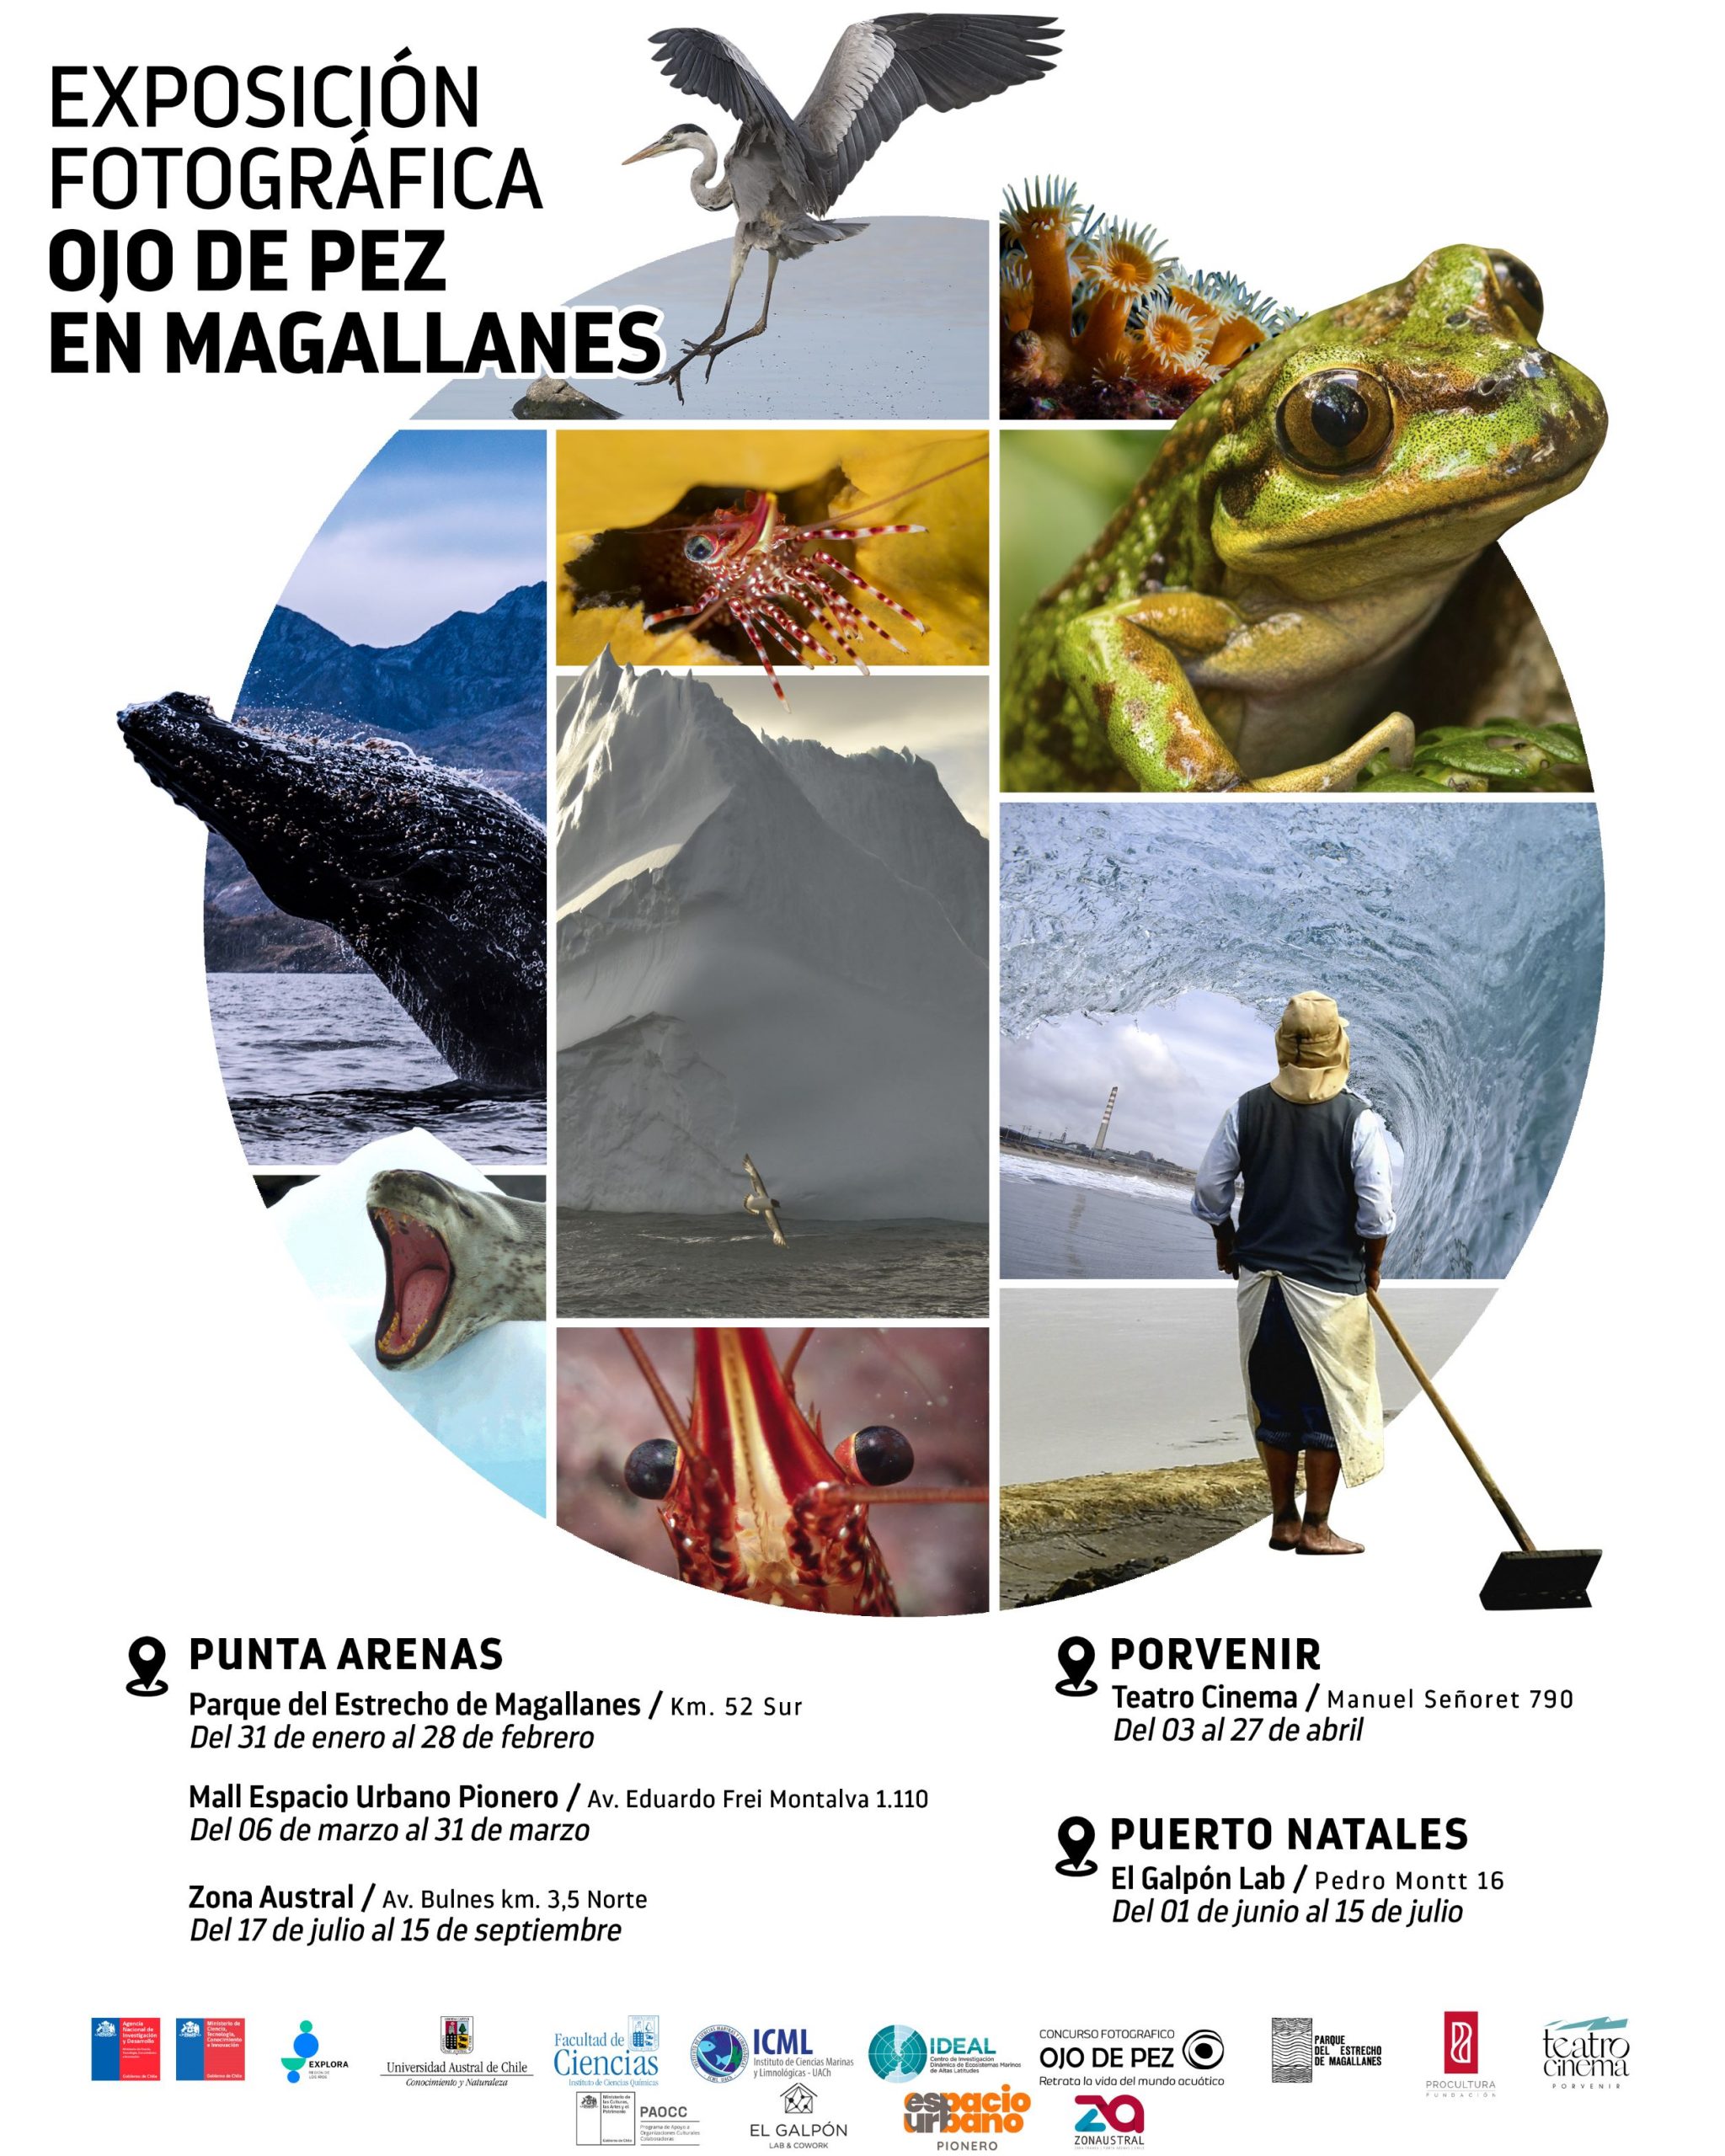 Exposición fotográfica Ojo de Pez se presenta en la región de Magallanes